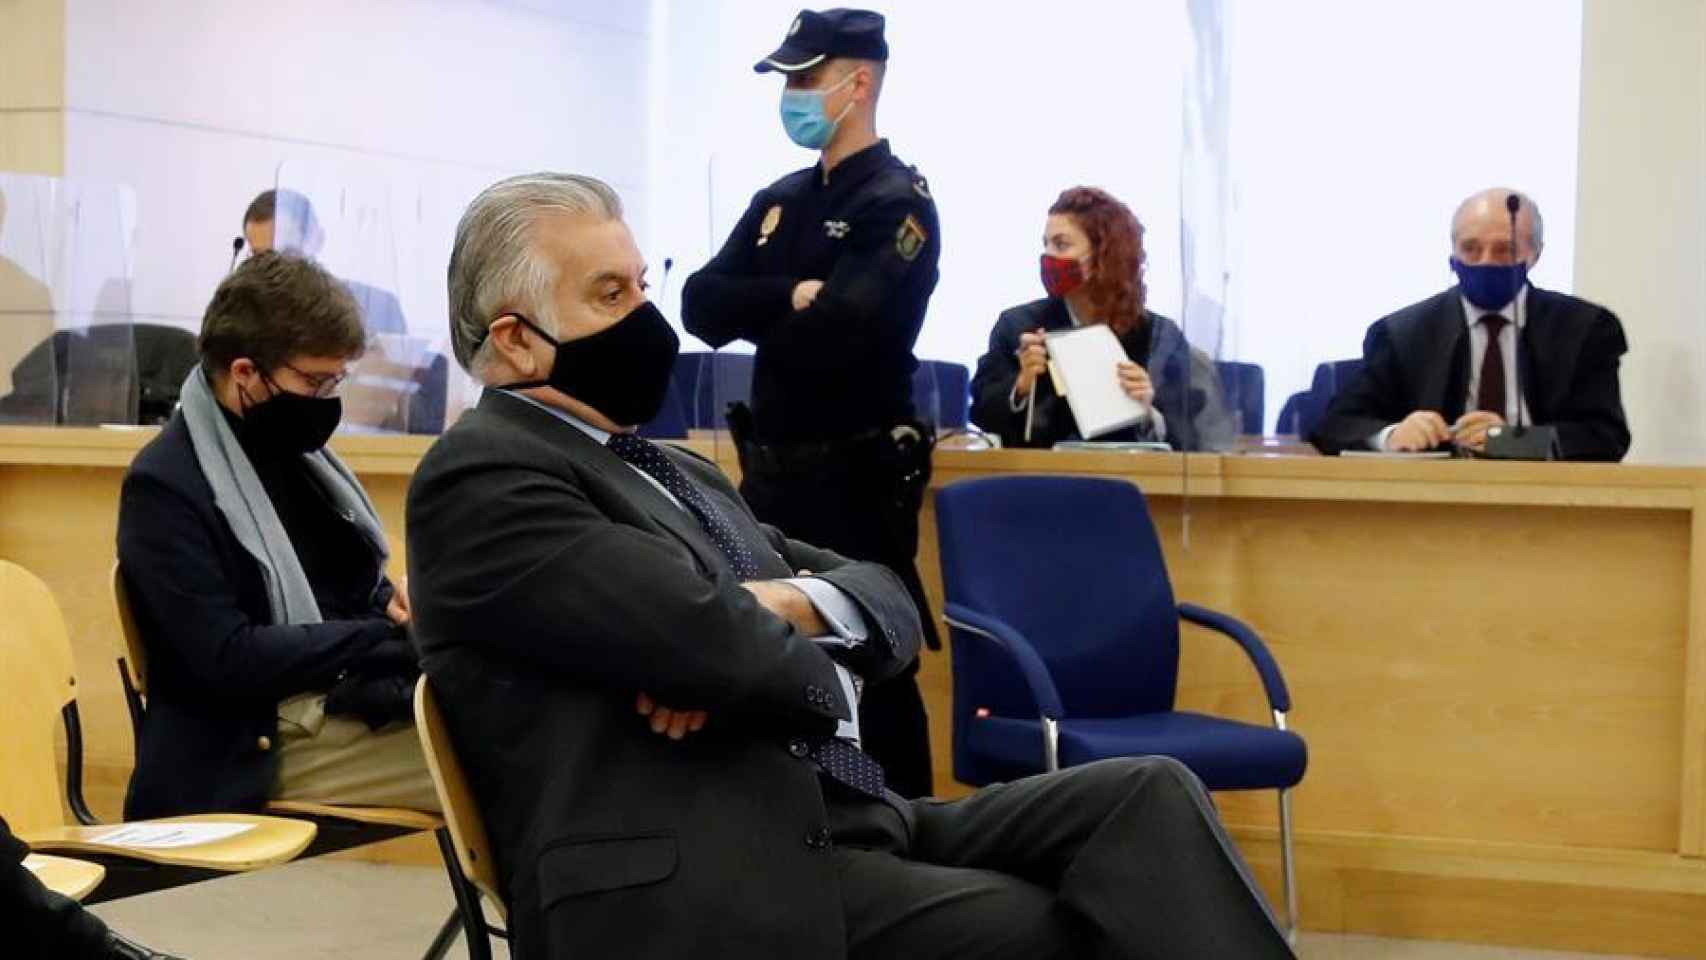 El extesorero del Partido Popular, Luis Bárcenas, en la primera sesión del juicio de la caja B del PP. Efe